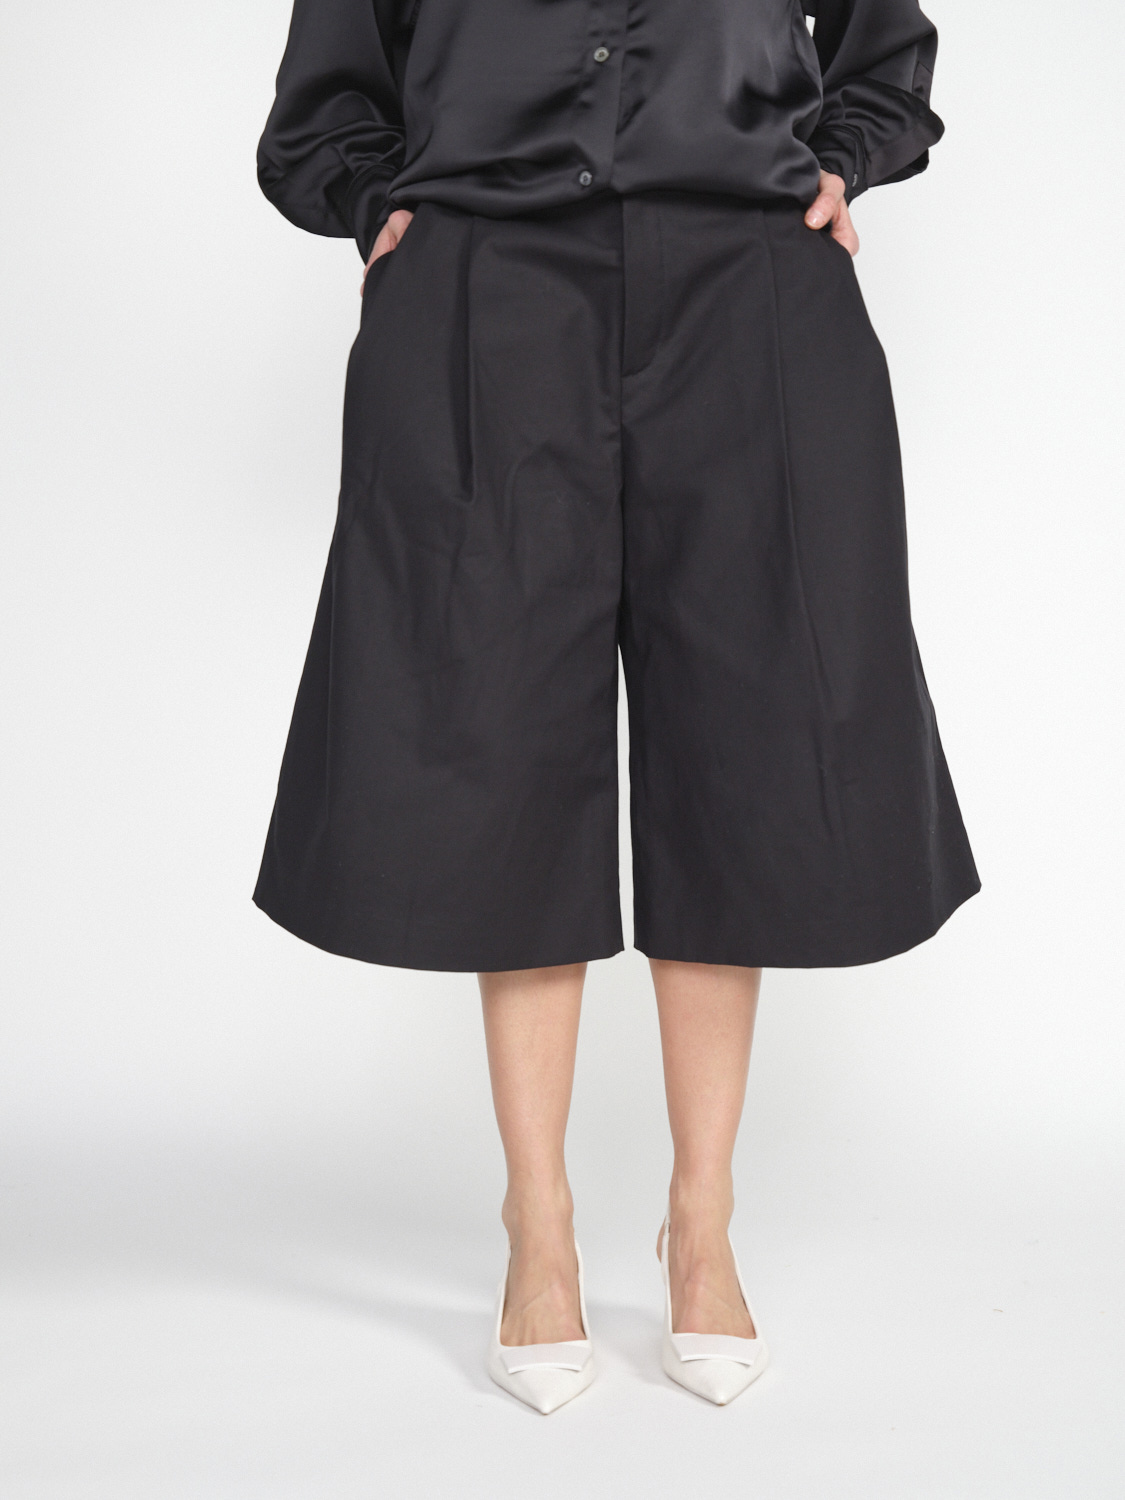 Rossi Jun – Oversized Shorts aus Baumwollsatin   schwarz XS